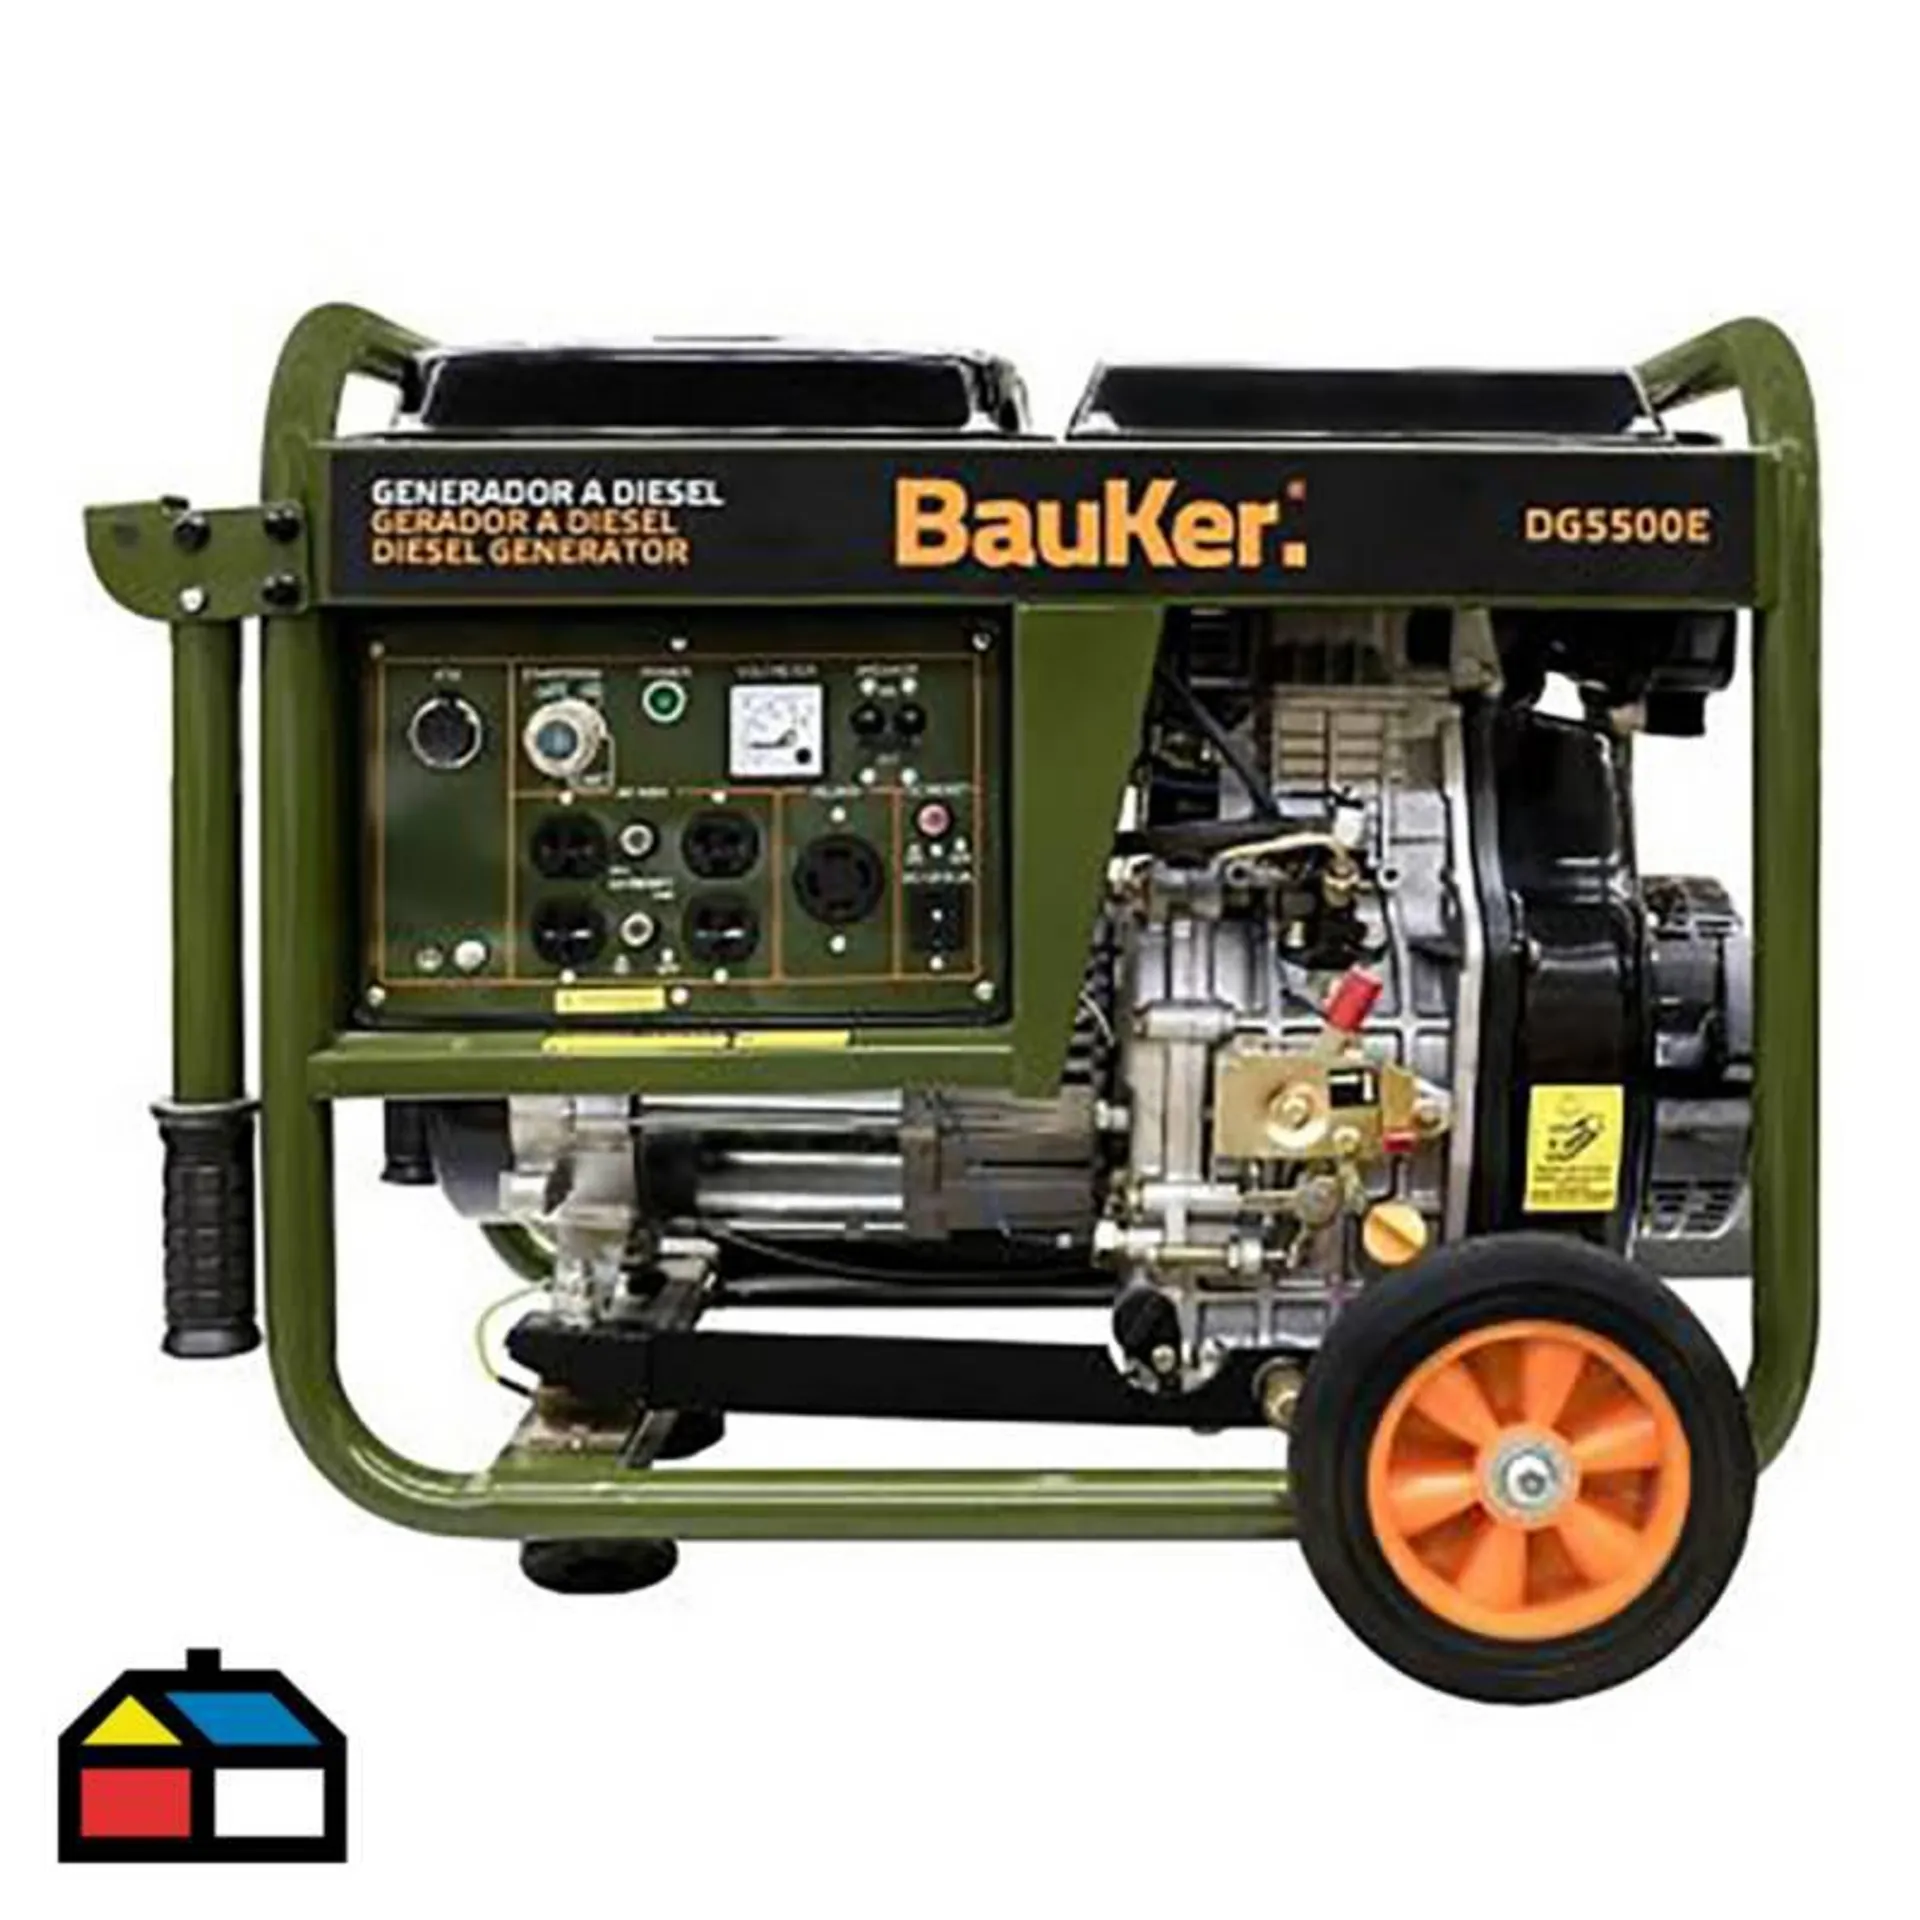 Generador a Diesel 5500W Bauker